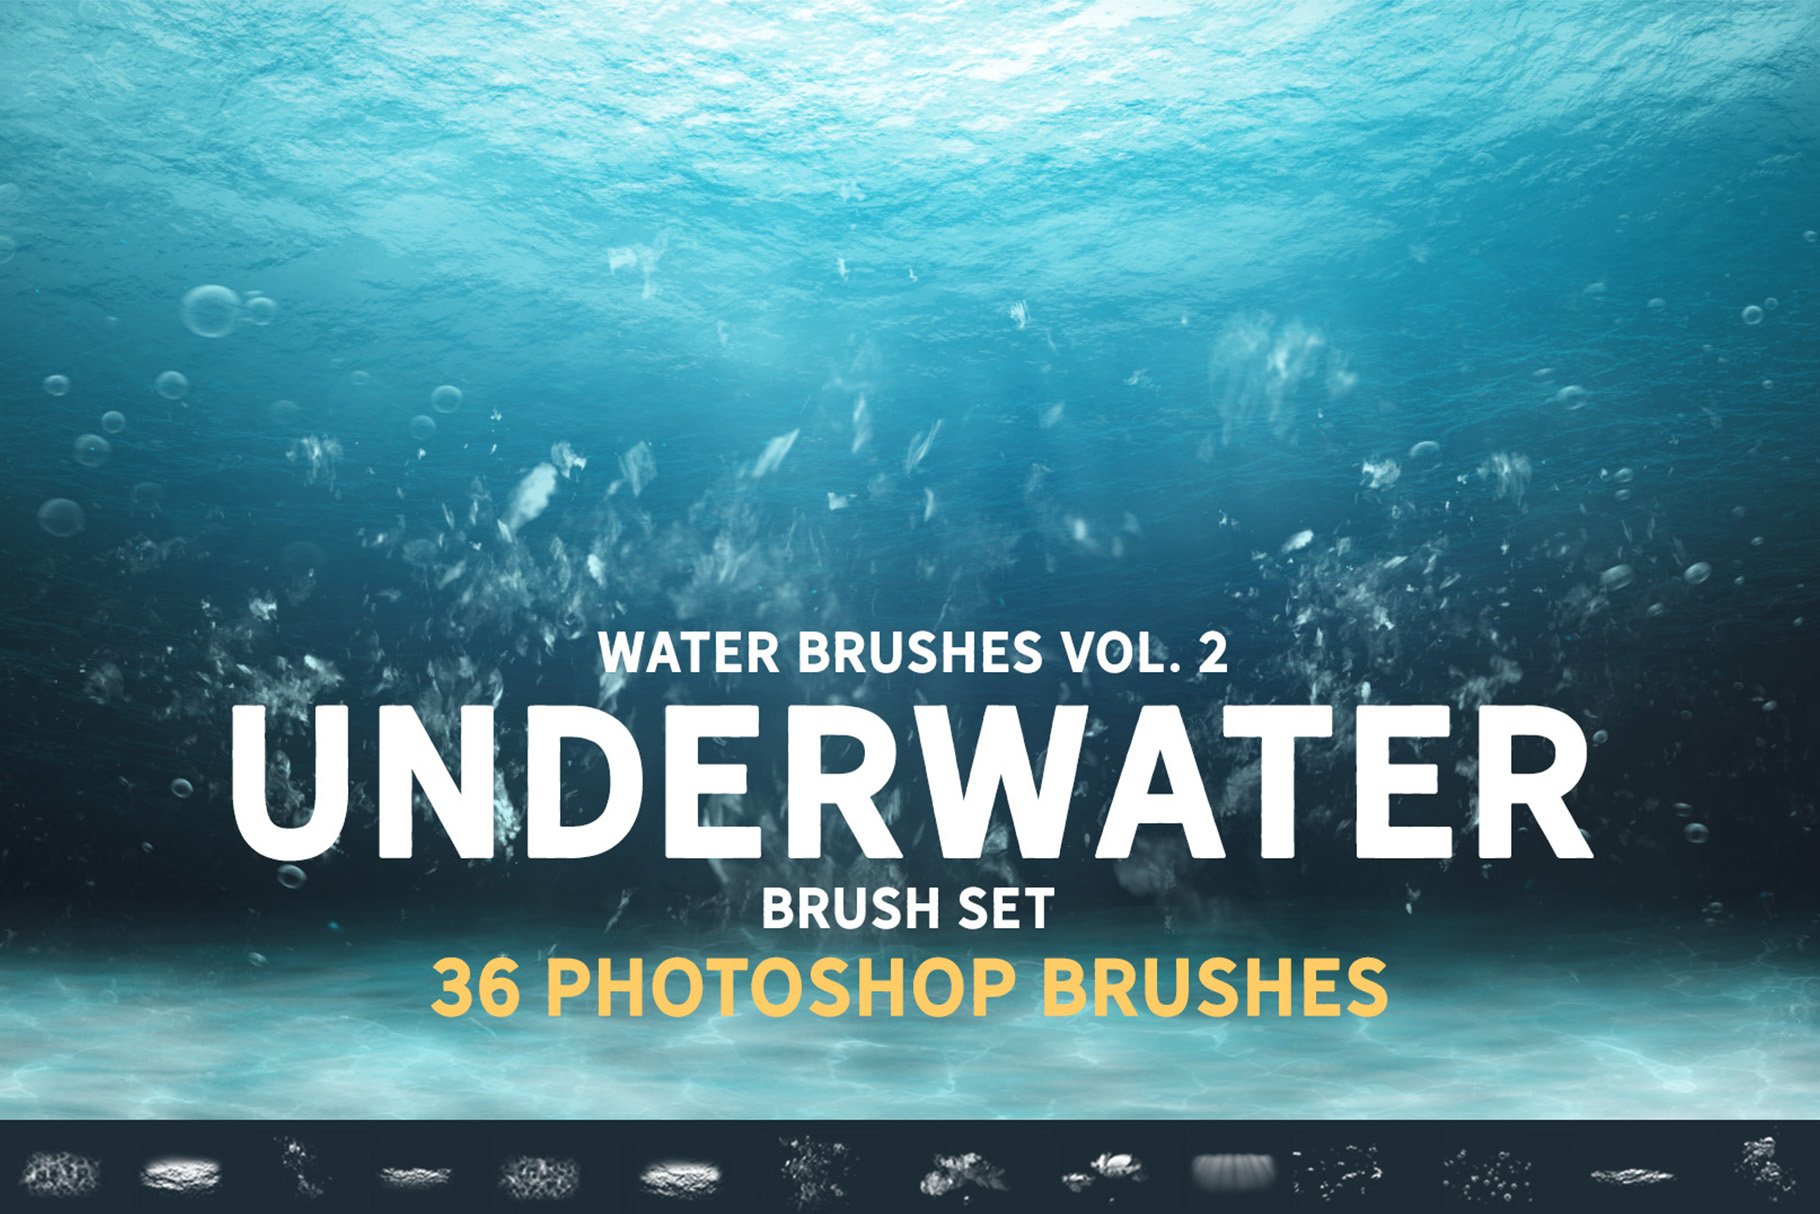 Underwater Brush setcover image.